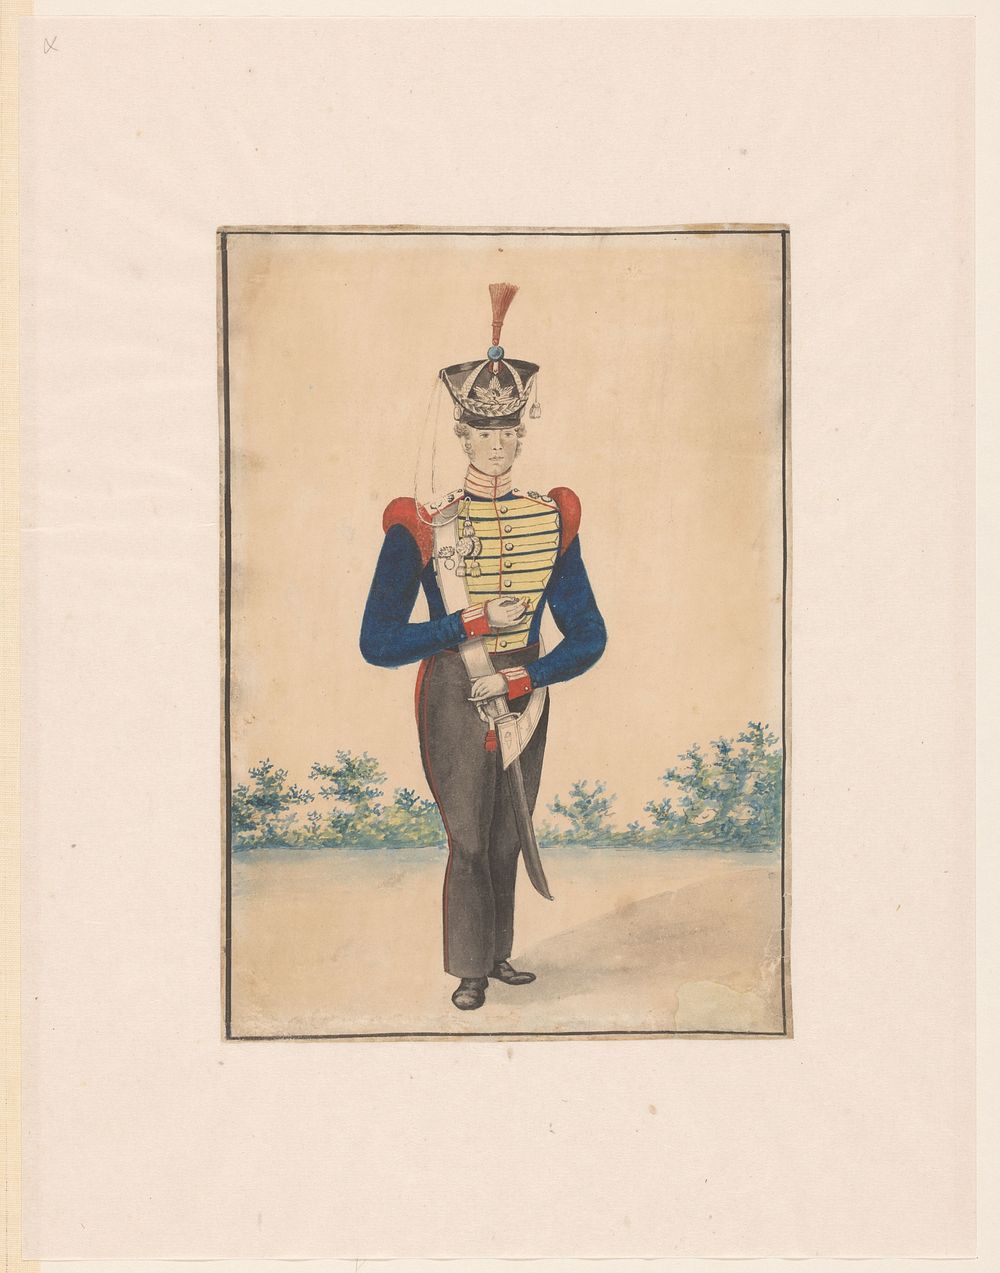 Van der Beijl (1820 - 1830) by anonymous